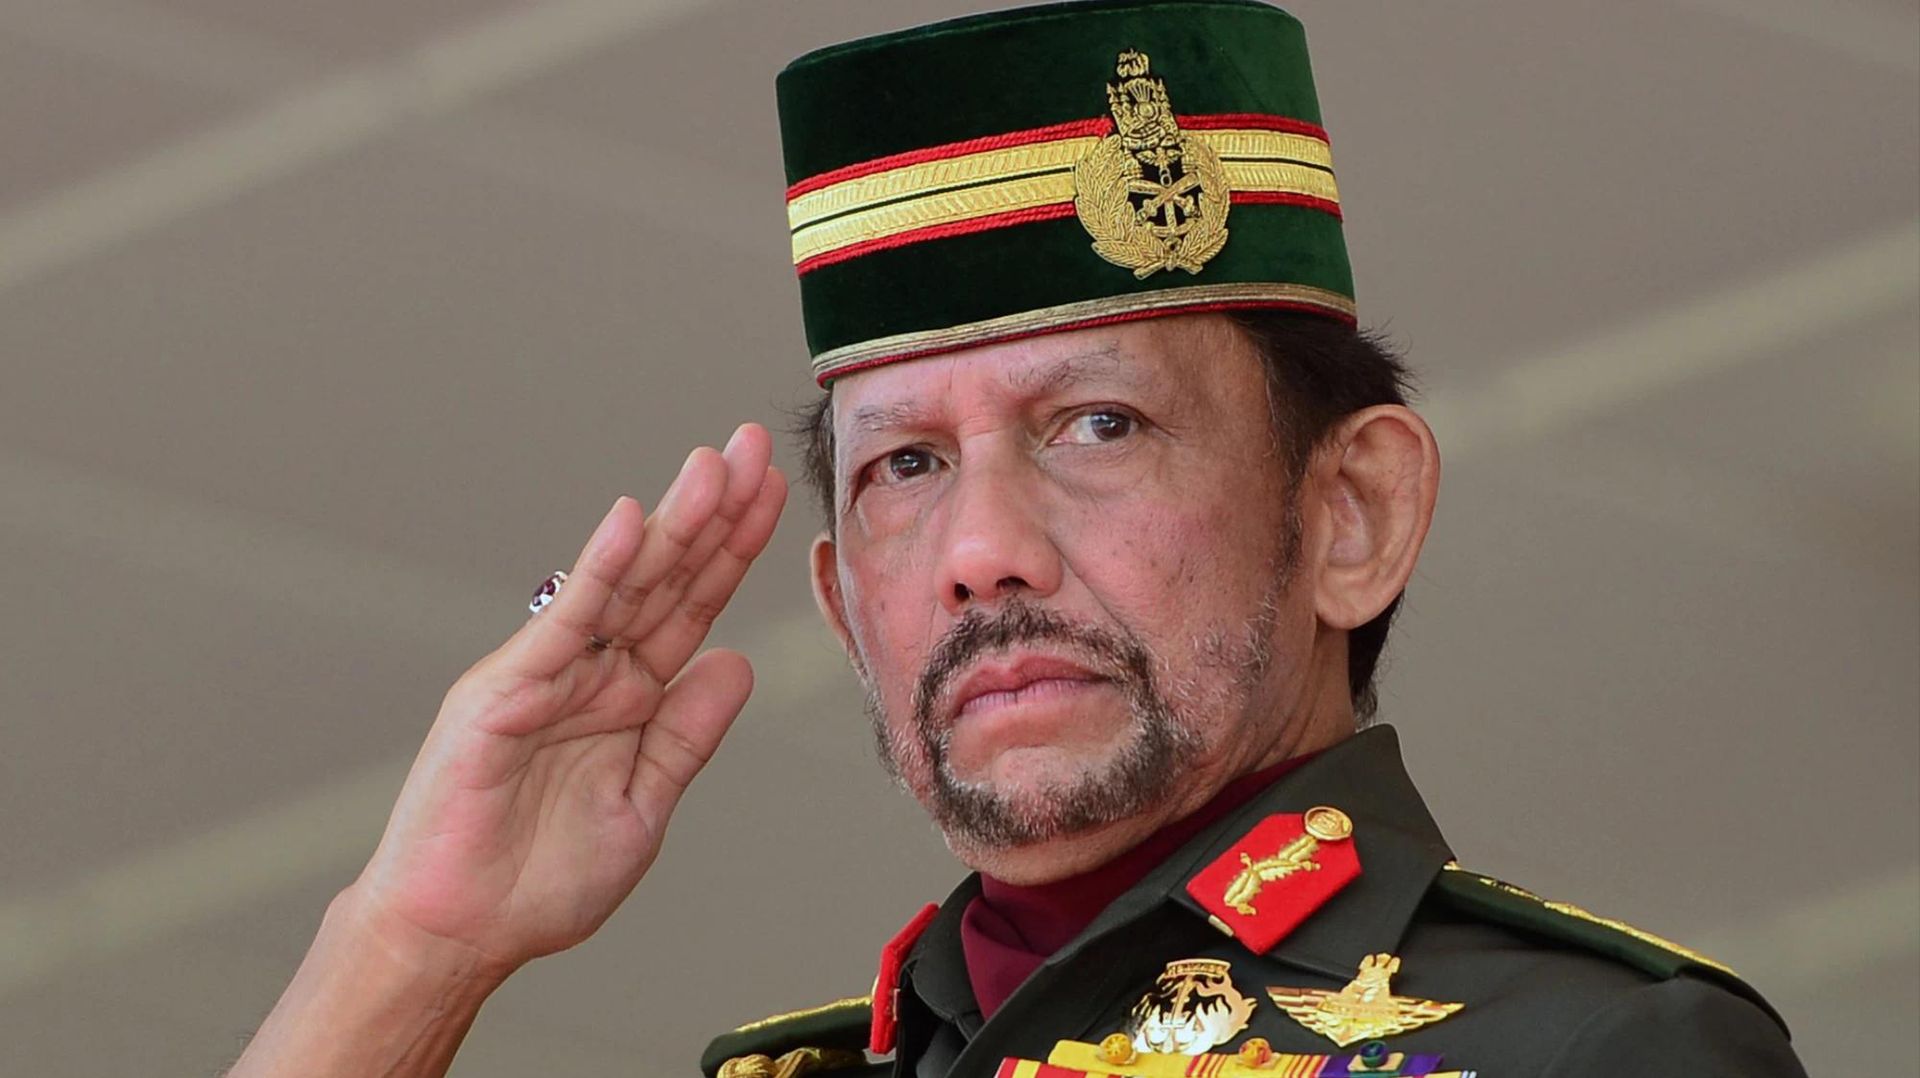 W Brunei seks homoseksualny będzie karany śmiercią przez ukamienowanie